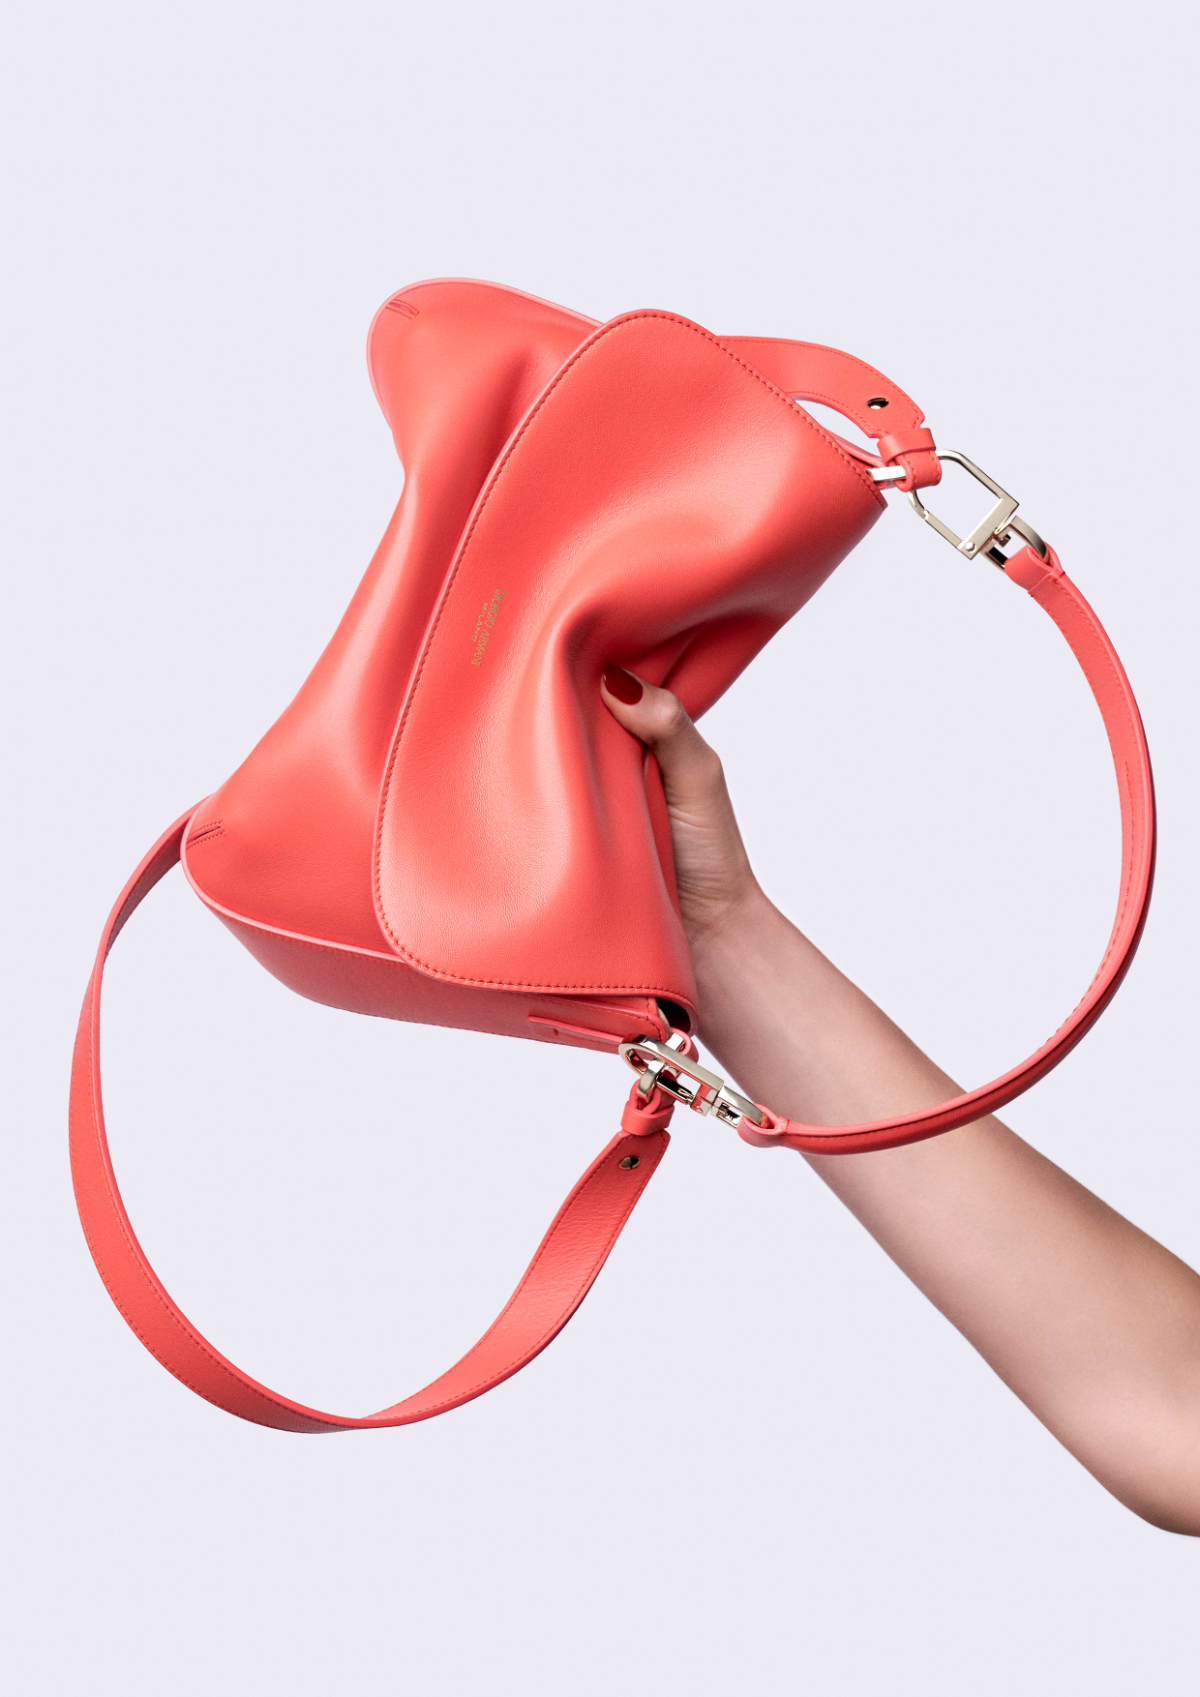 Giorgio Armani Presents Its New La Prima Soft Bag